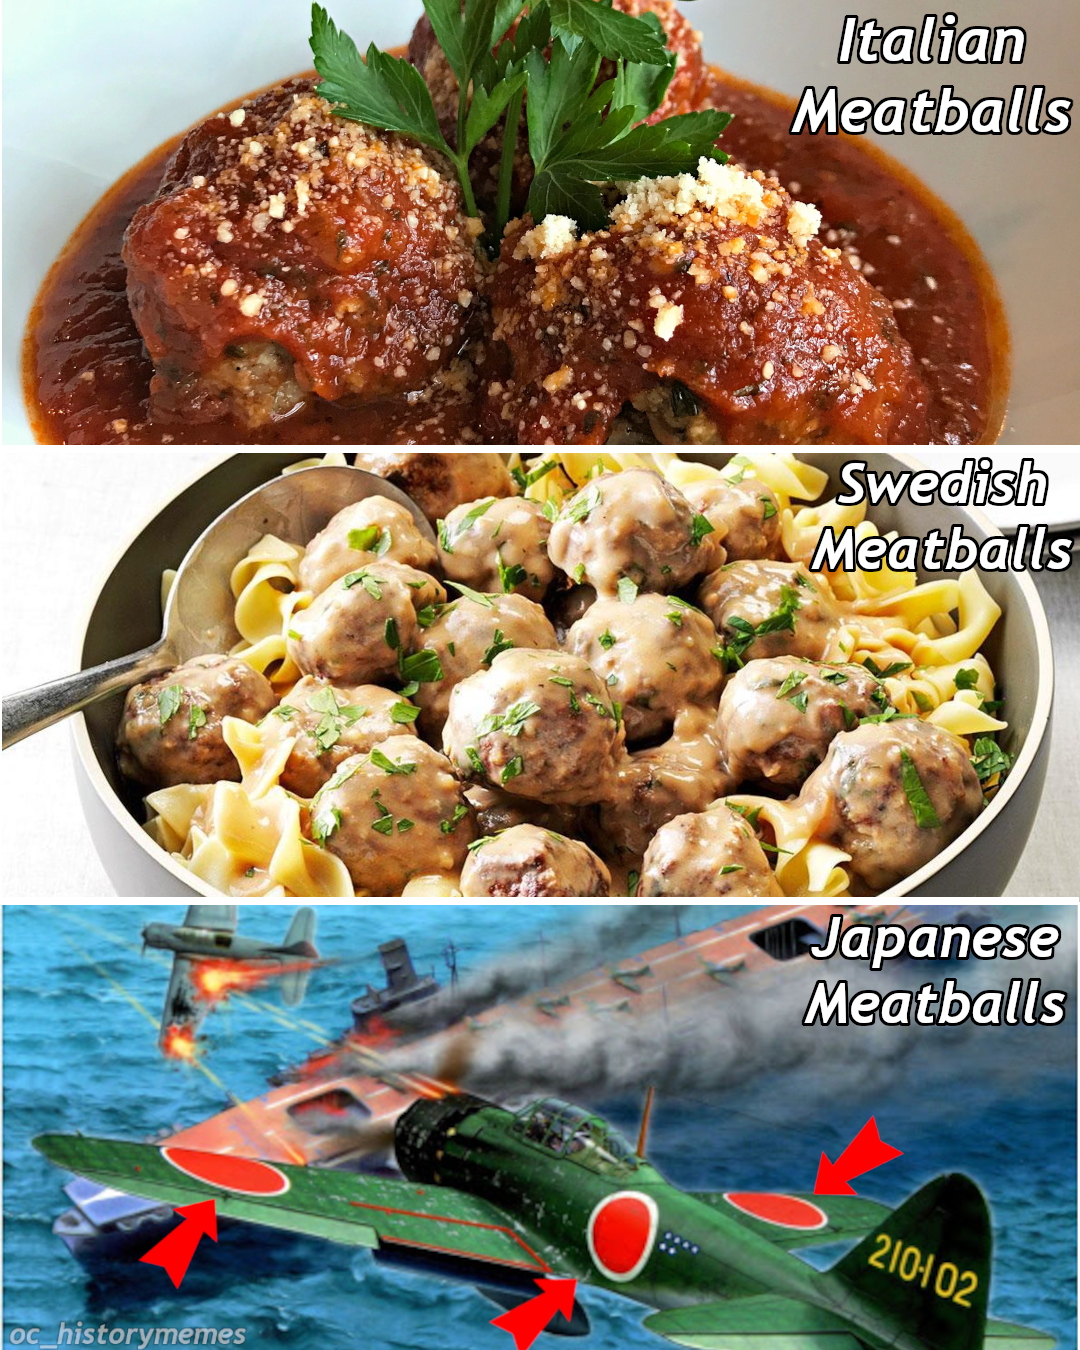 taste of home swedish meatballs - Italian Meatballs Swedish Meatballs Japanese Meatballs 210102 oc historymemes